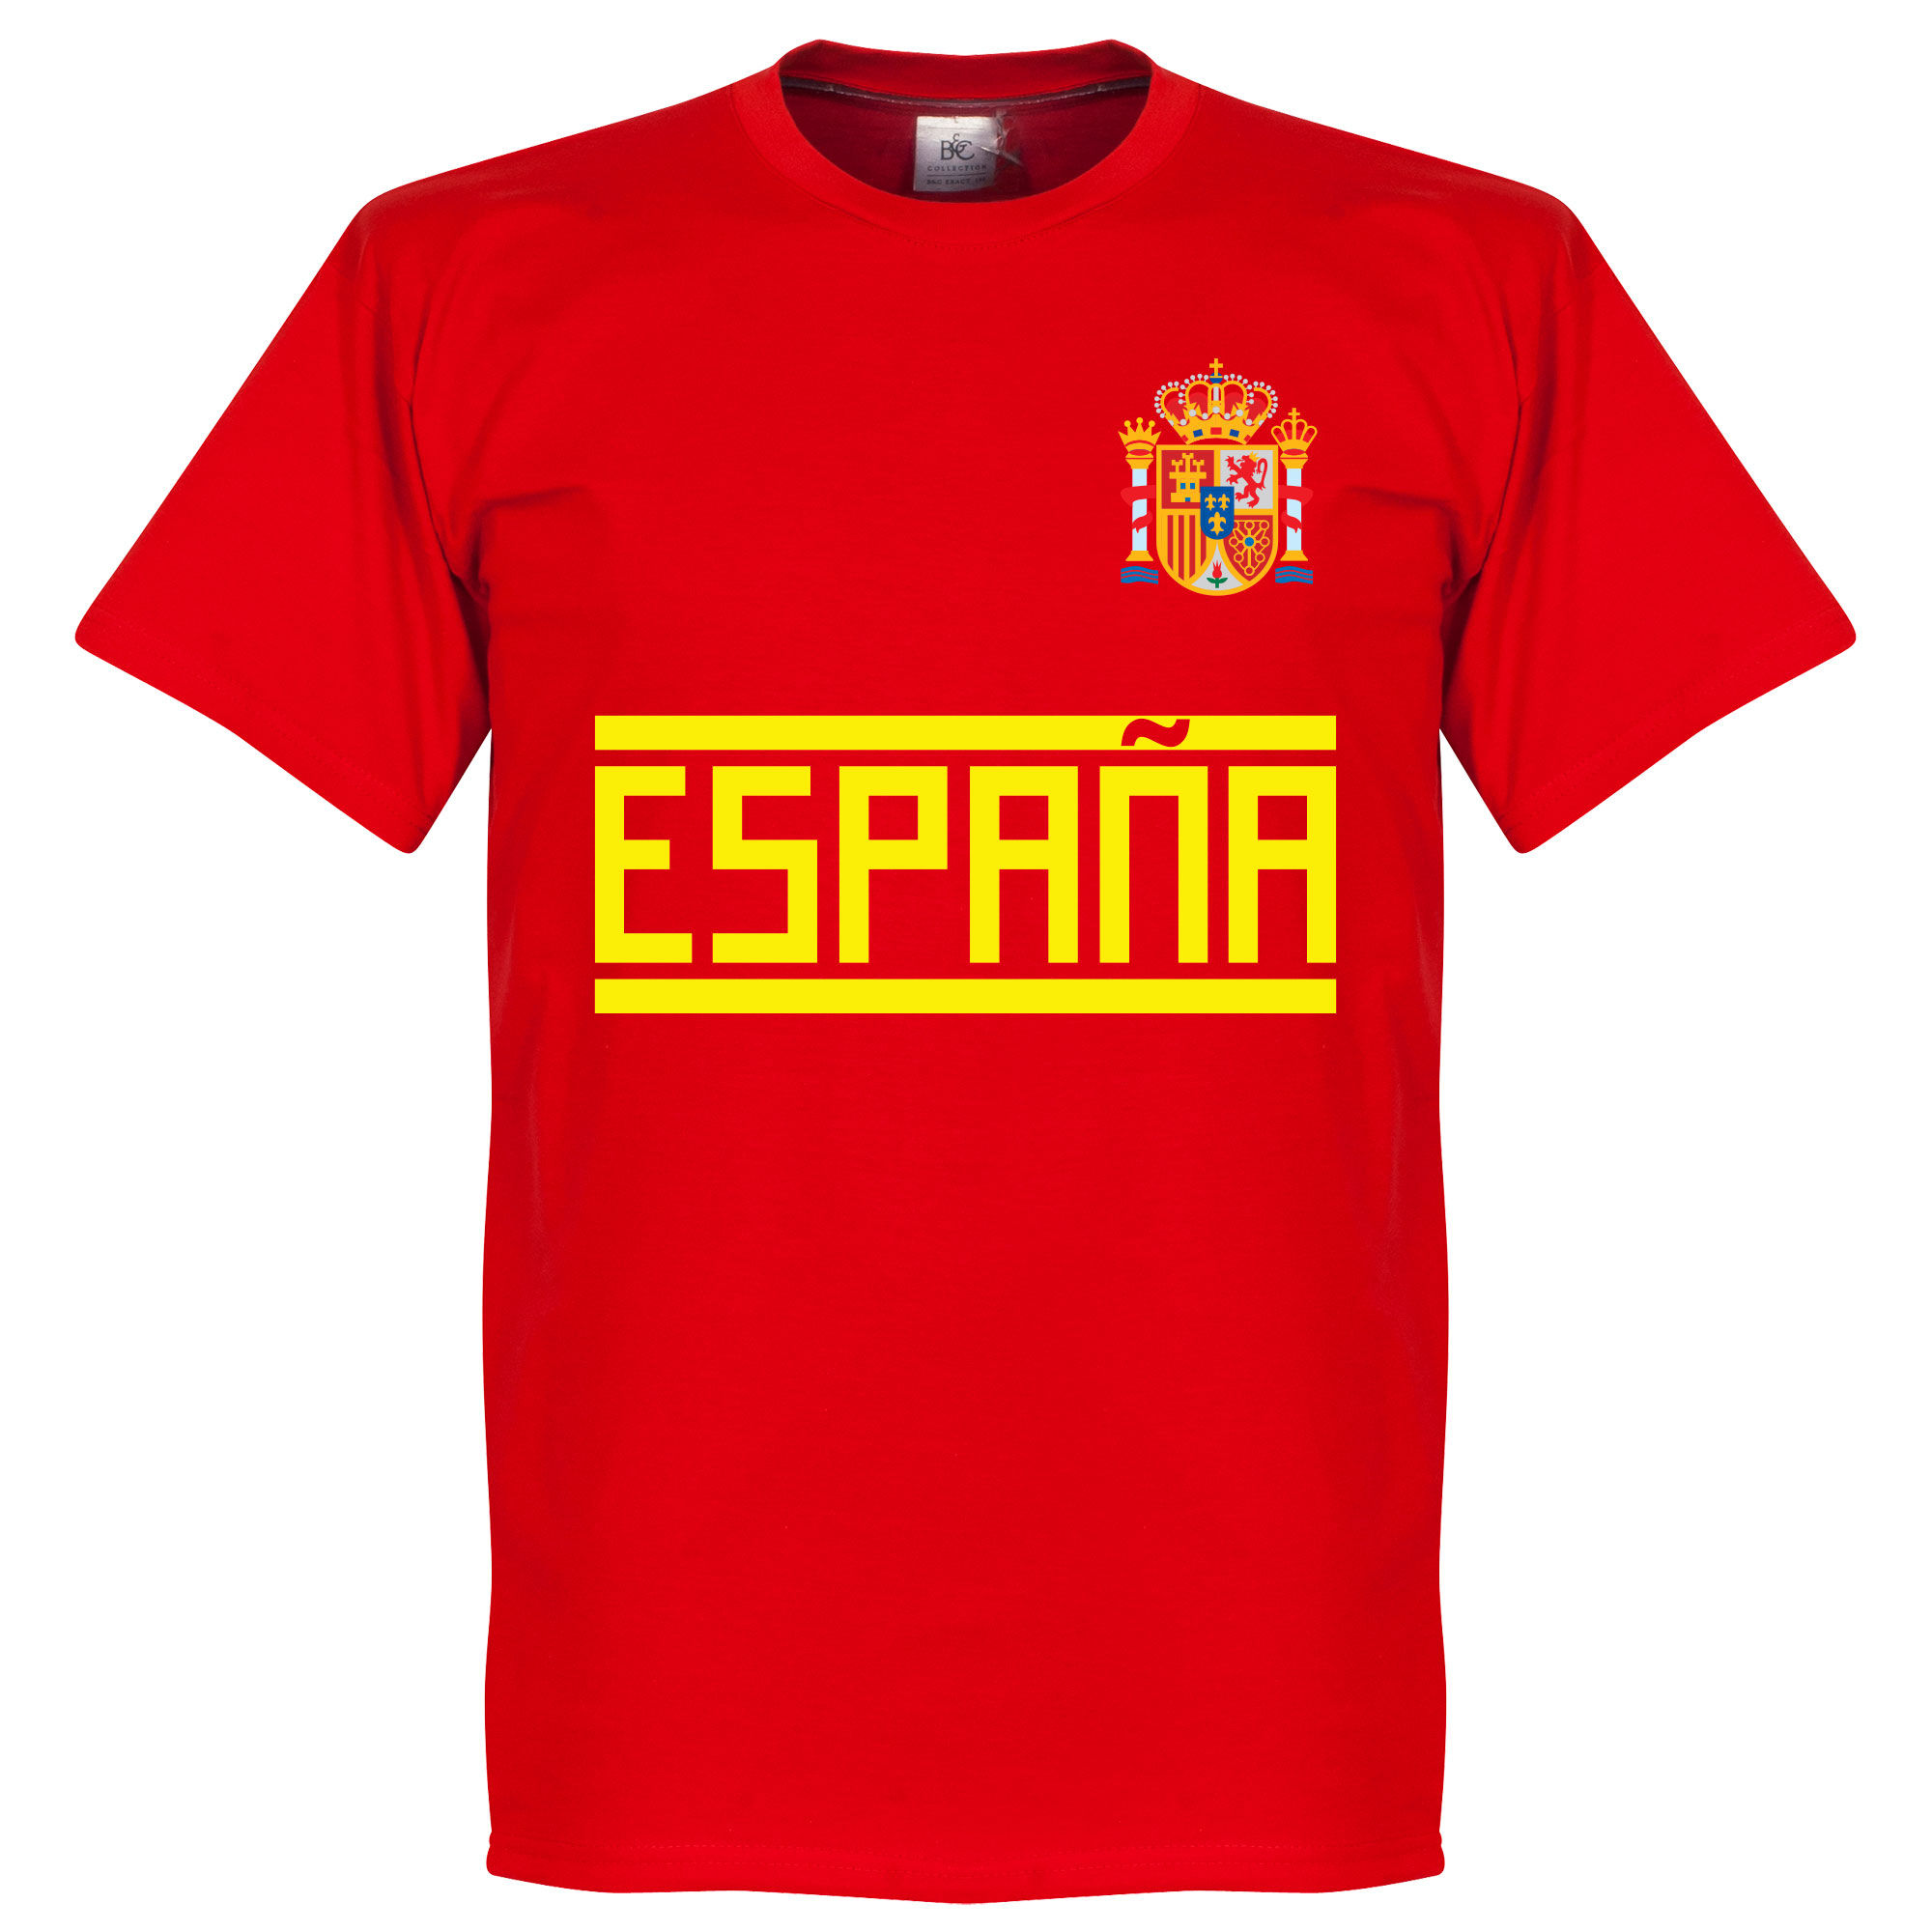 Španělsko - Tričko - červené